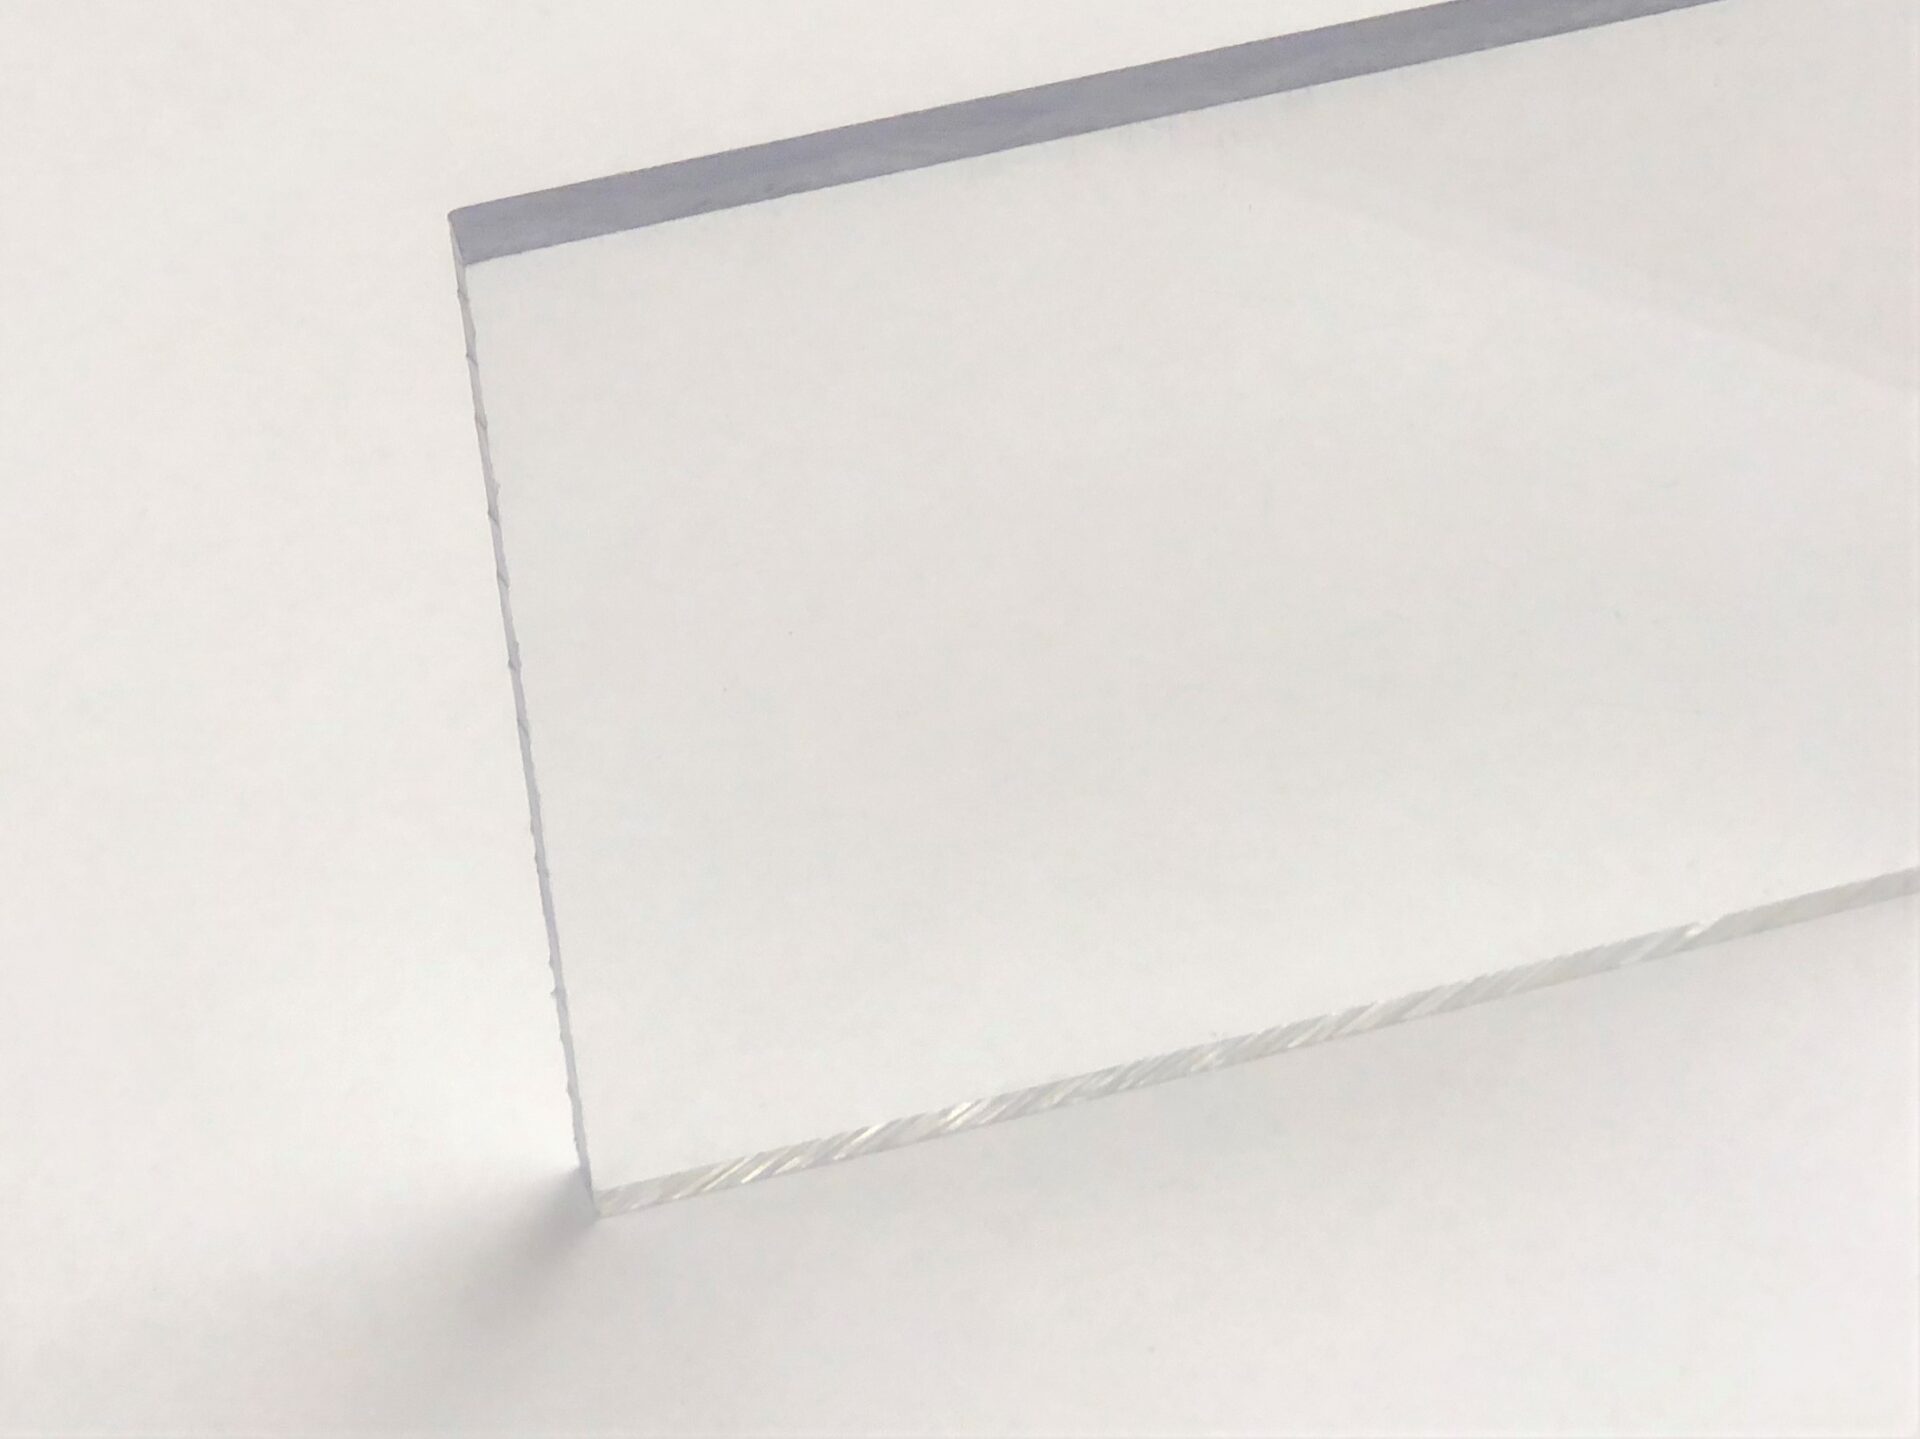 What is Acrylic / Plexiglass?